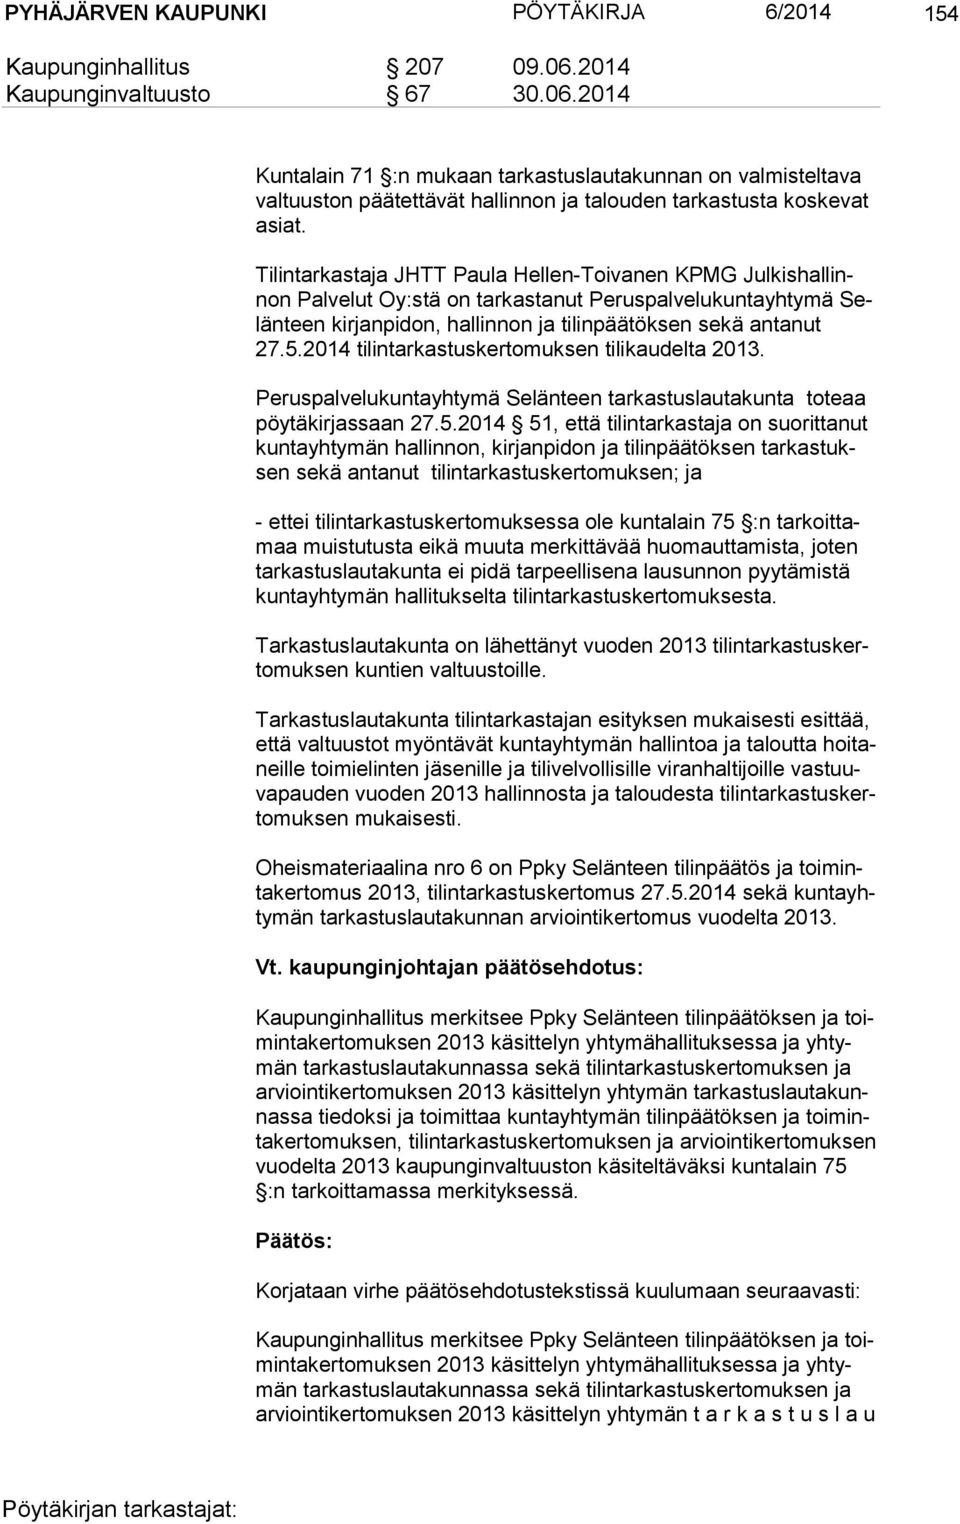 Tilintarkastaja JHTT Paula Hellen-Toivanen KPMG Jul kis hal linnon Palvelut Oy:stä on tarkastanut Peruspalvelukuntayhtymä Selän teen kirjanpidon, hallinnon ja tilinpäätöksen sekä antanut 27.5.